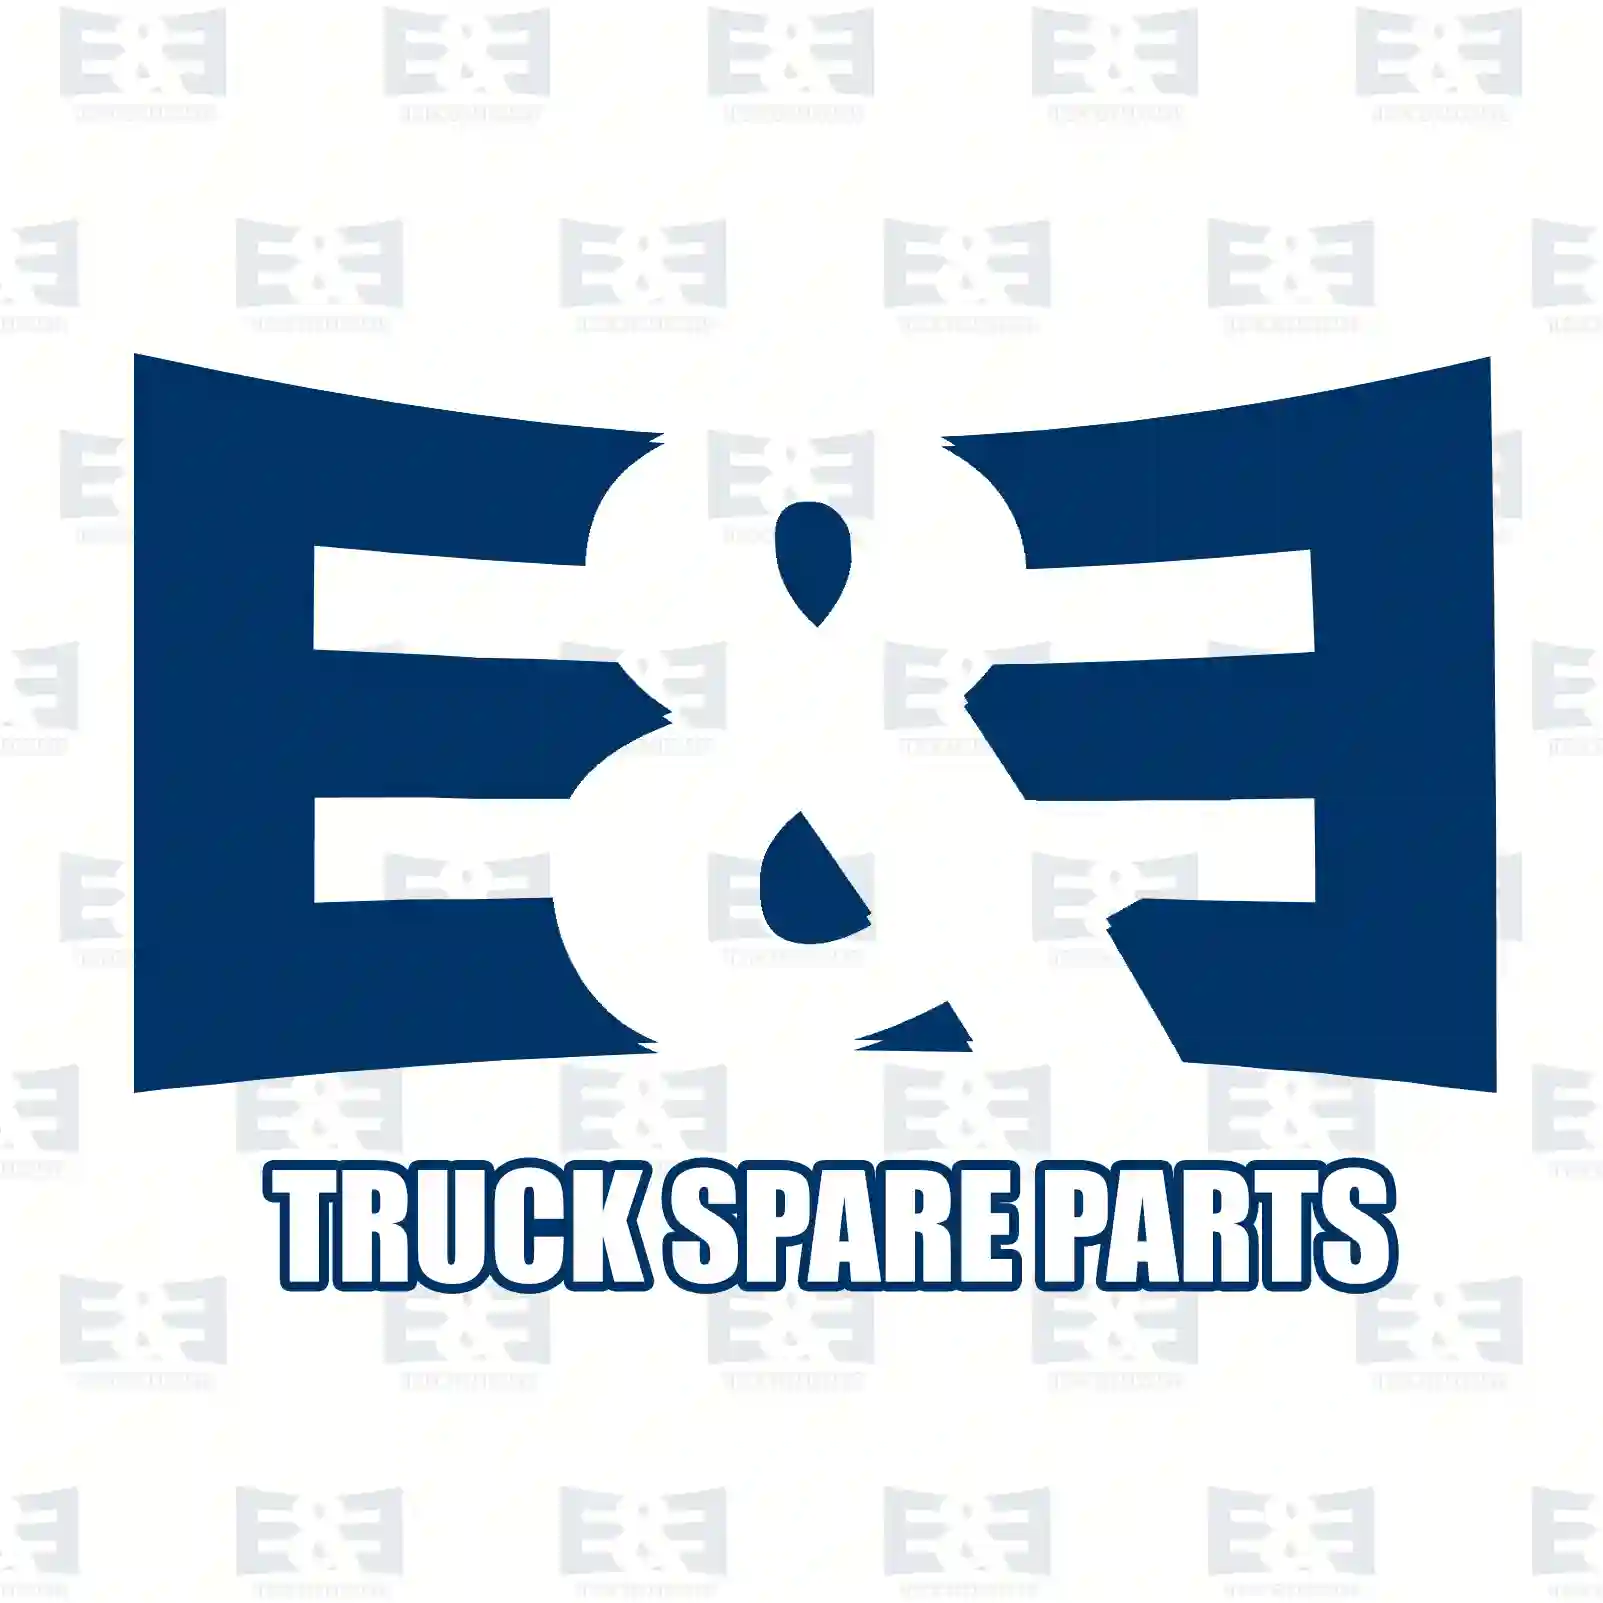 Fan with clutch, 2E2202279, 504236556, 5801587048, 5801687224 ||  2E2202279 E&E Truck Spare Parts | Truck Spare Parts, Auotomotive Spare Parts Fan with clutch, 2E2202279, 504236556, 5801587048, 5801687224 ||  2E2202279 E&E Truck Spare Parts | Truck Spare Parts, Auotomotive Spare Parts